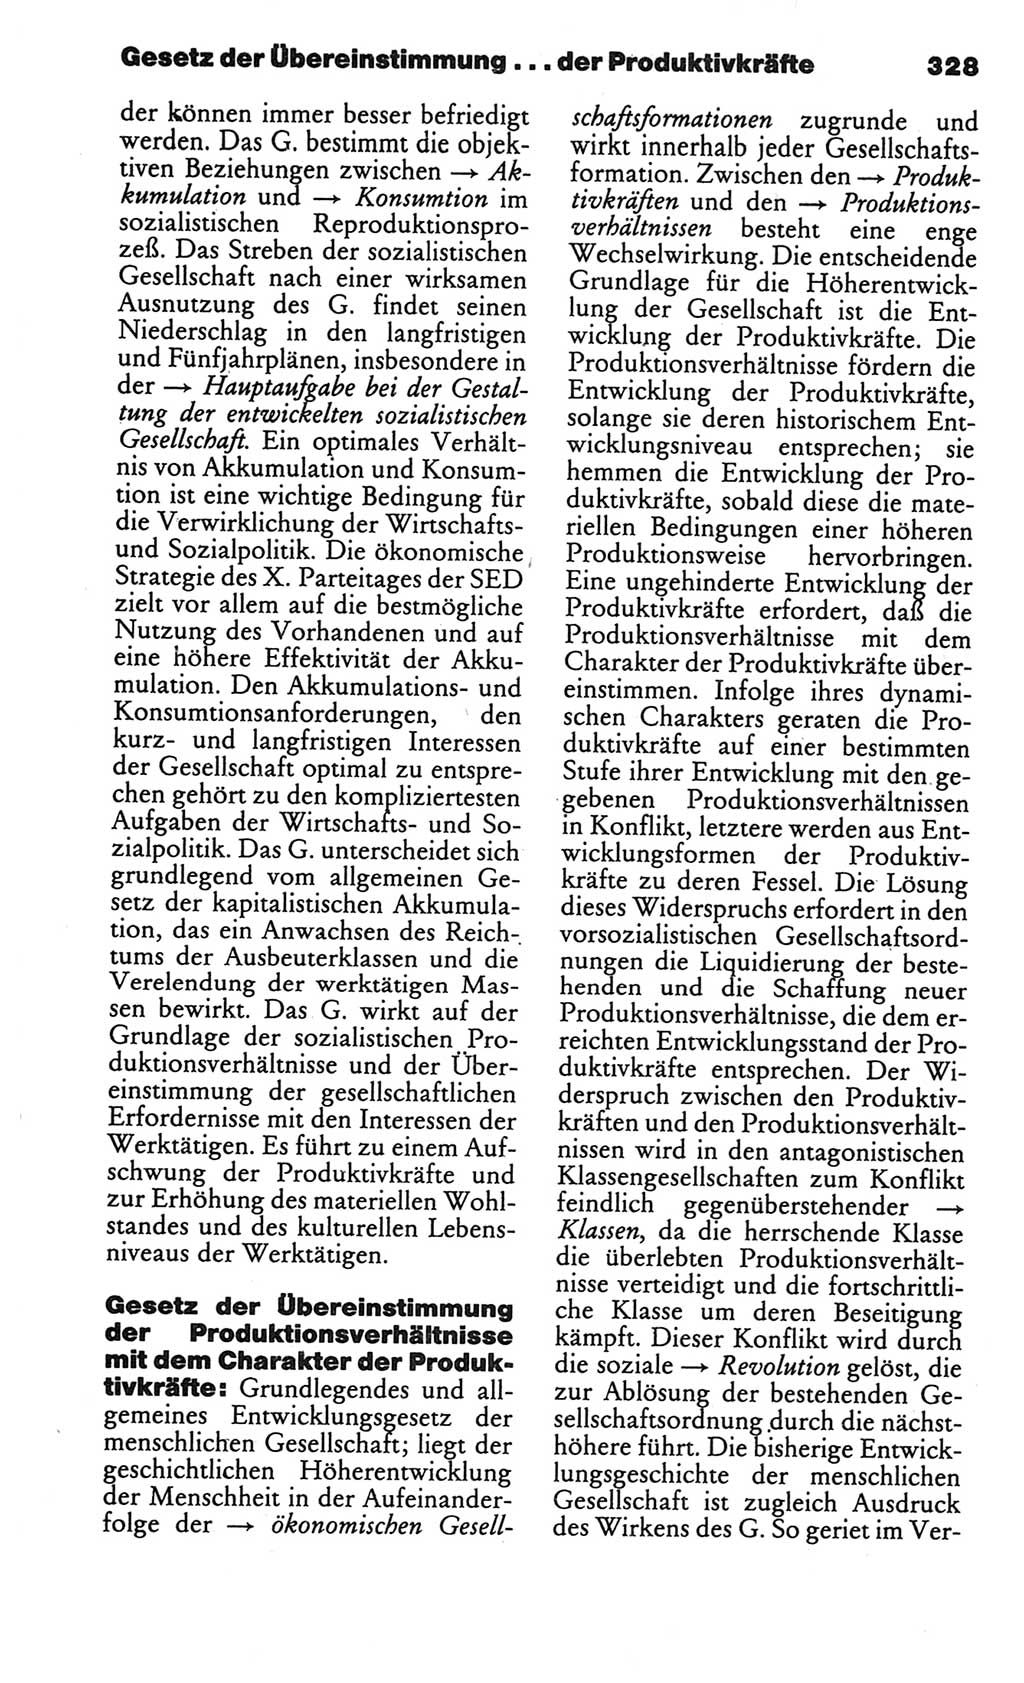 Kleines politisches Wörterbuch [Deutsche Demokratische Republik (DDR)] 1986, Seite 328 (Kl. pol. Wb. DDR 1986, S. 328)